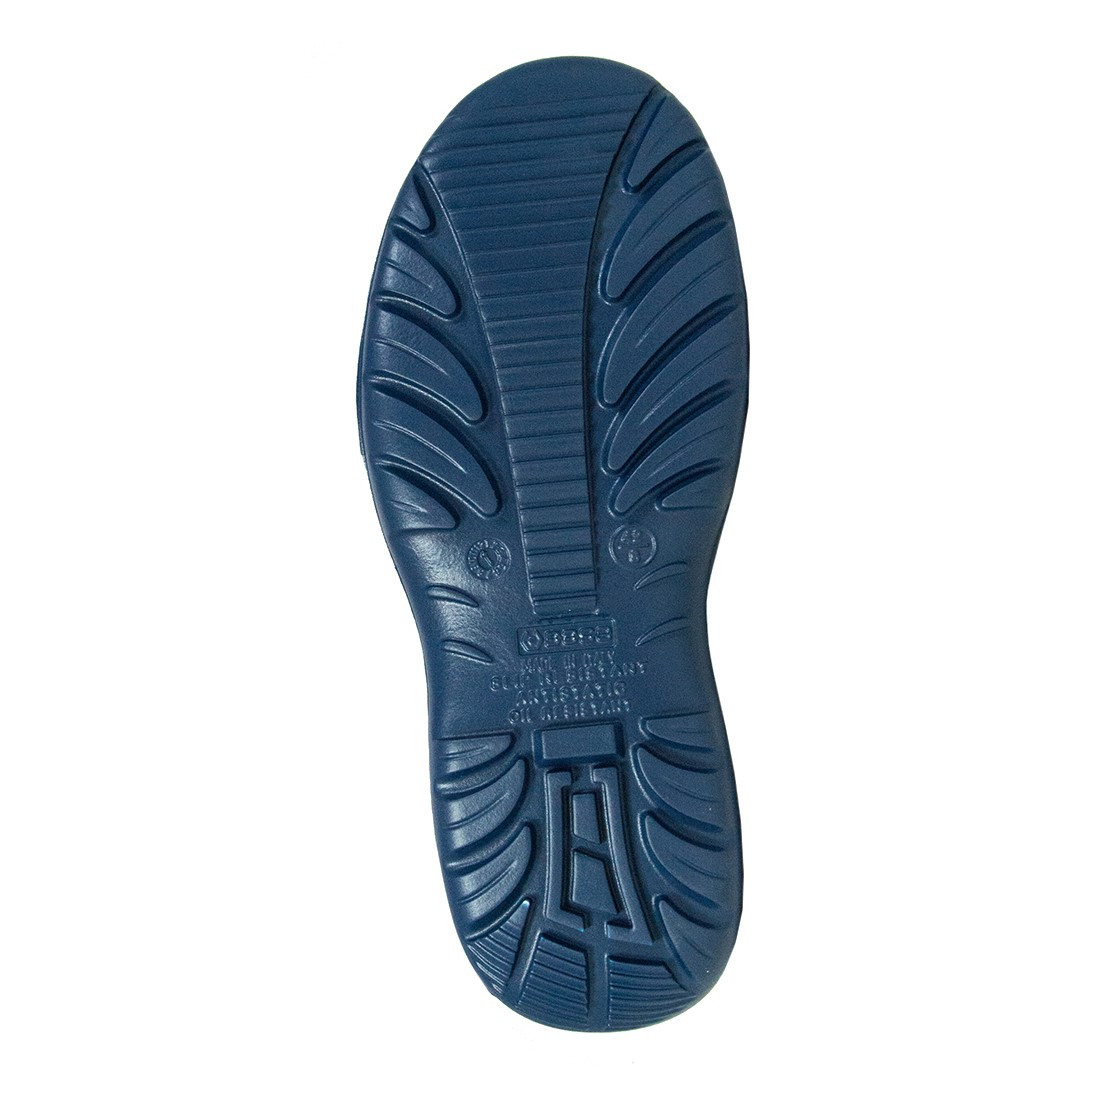 Vanadio Ankle Boot S2 SRC - Les chaussures de protection